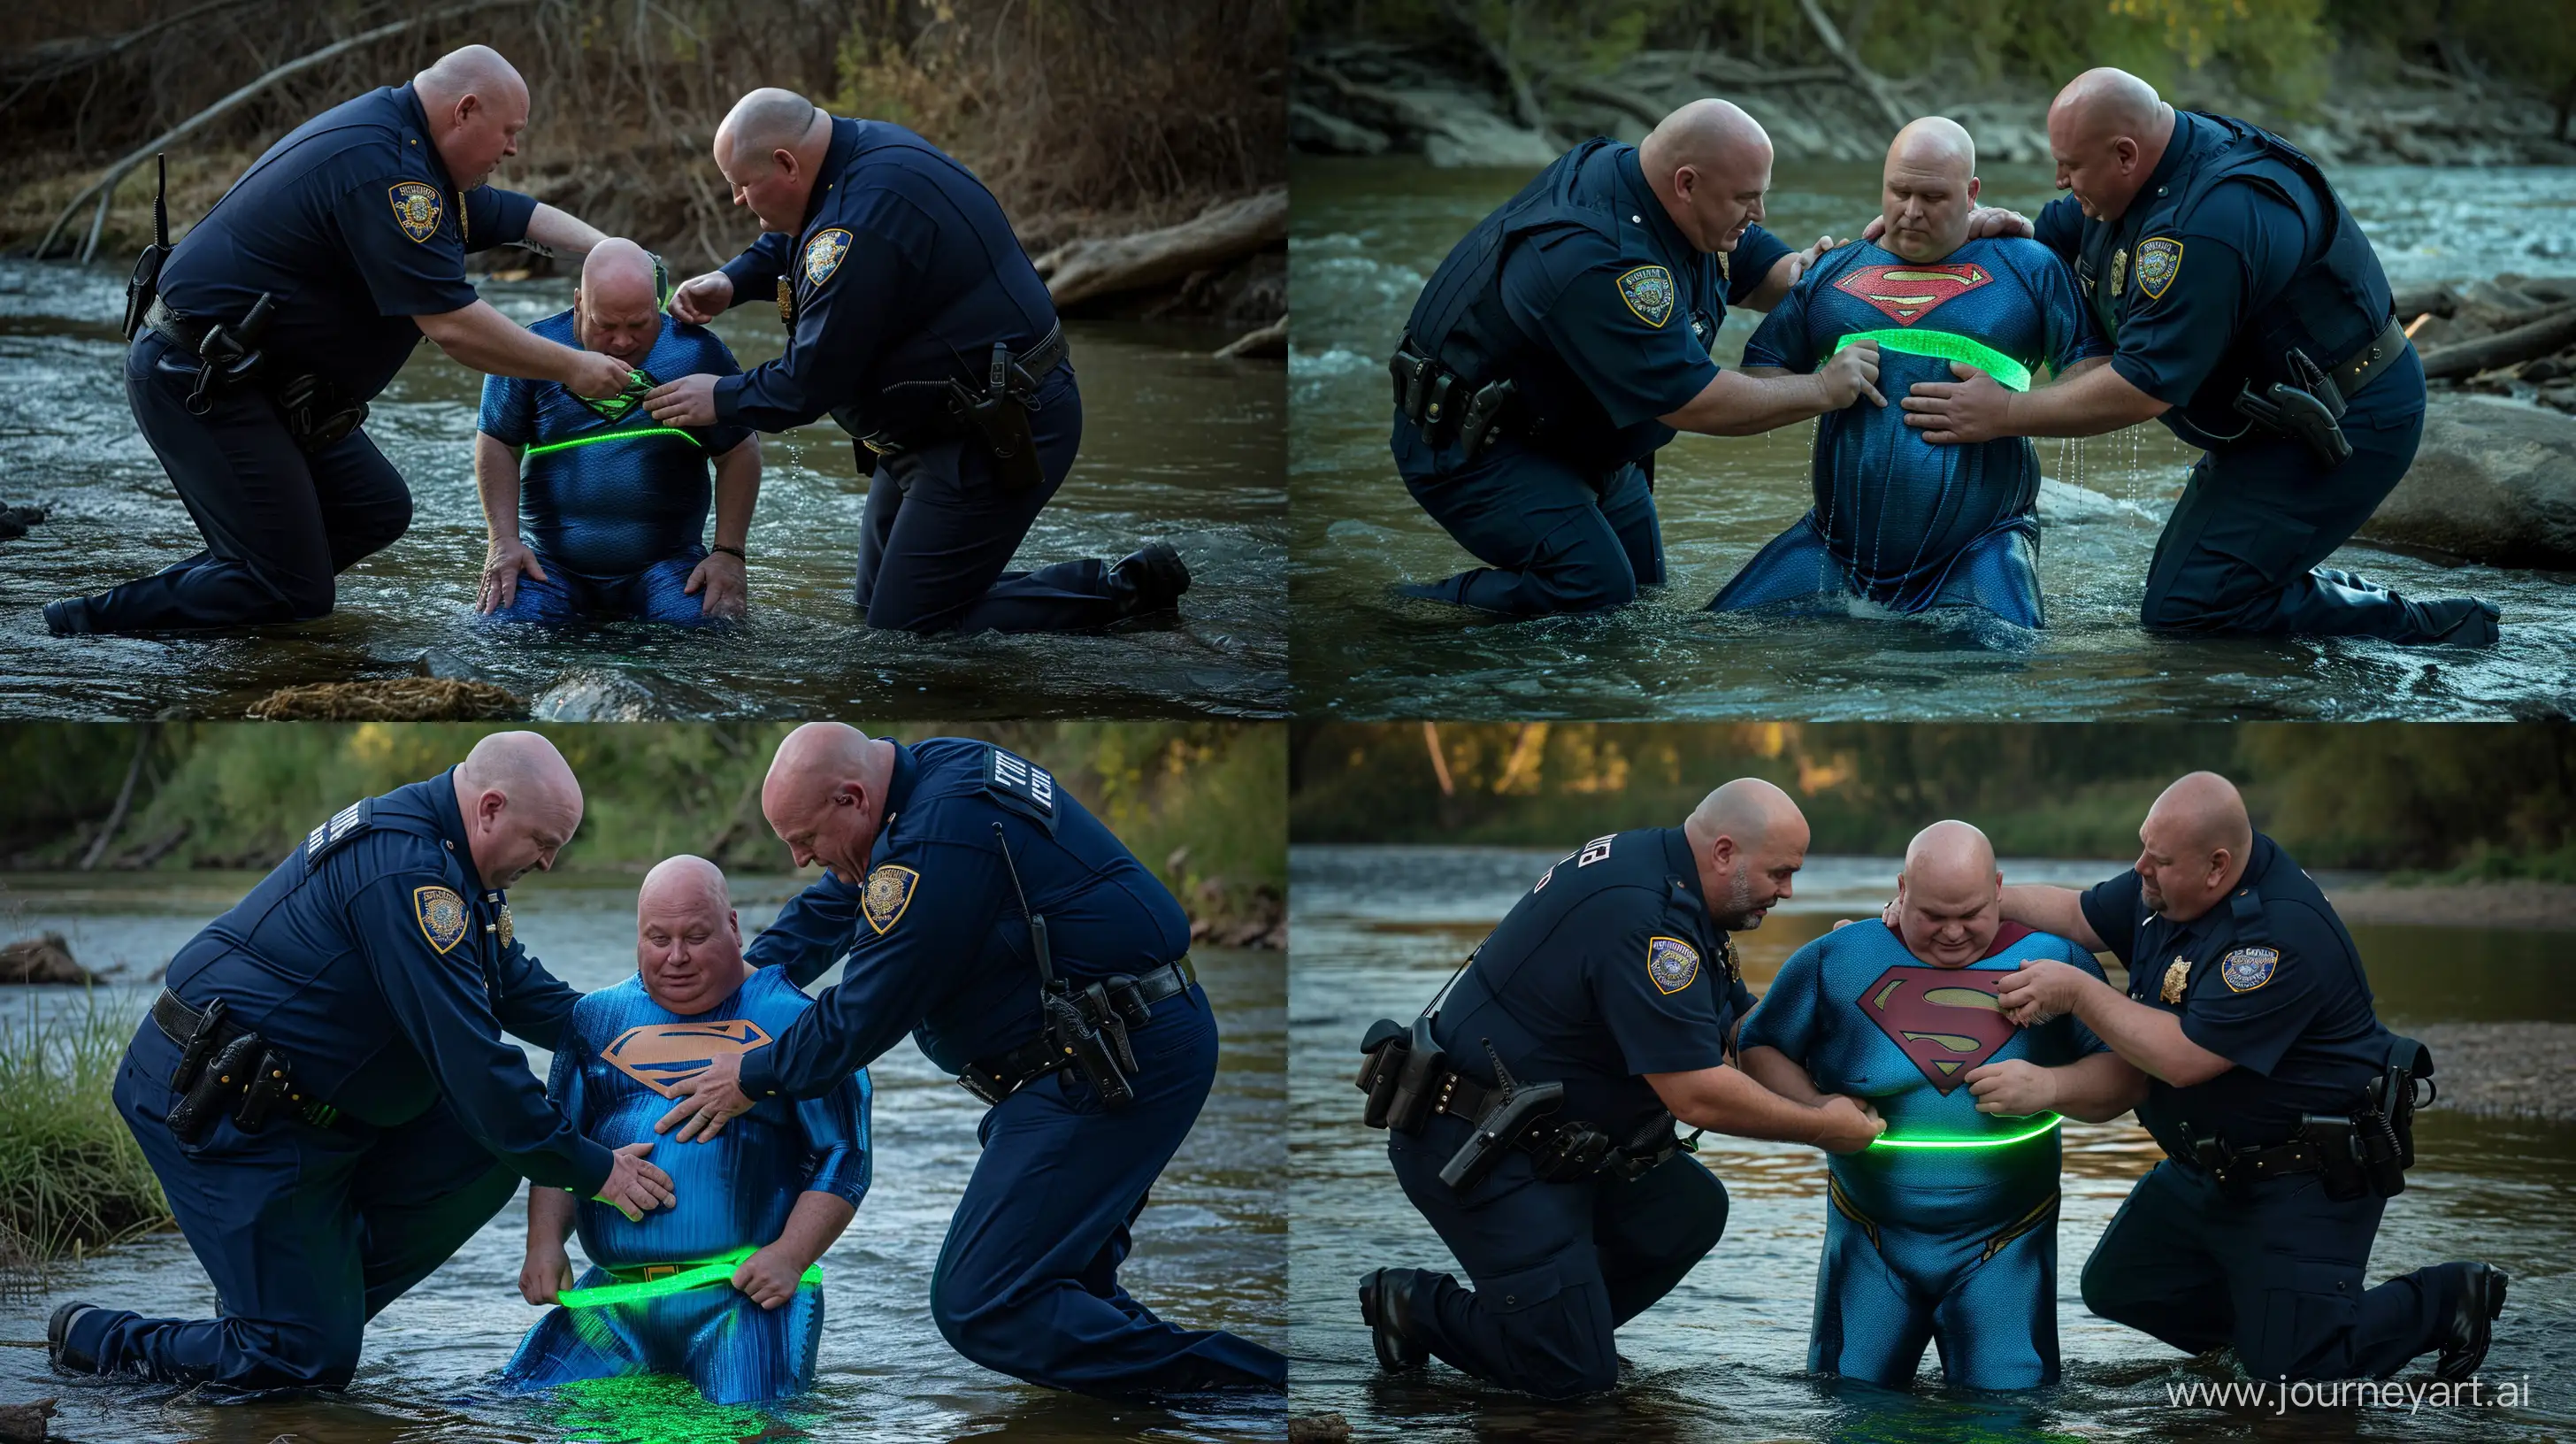 Elderly-Policemen-Secure-Glowing-Superhero-Belt-on-WaterKneeling-Man